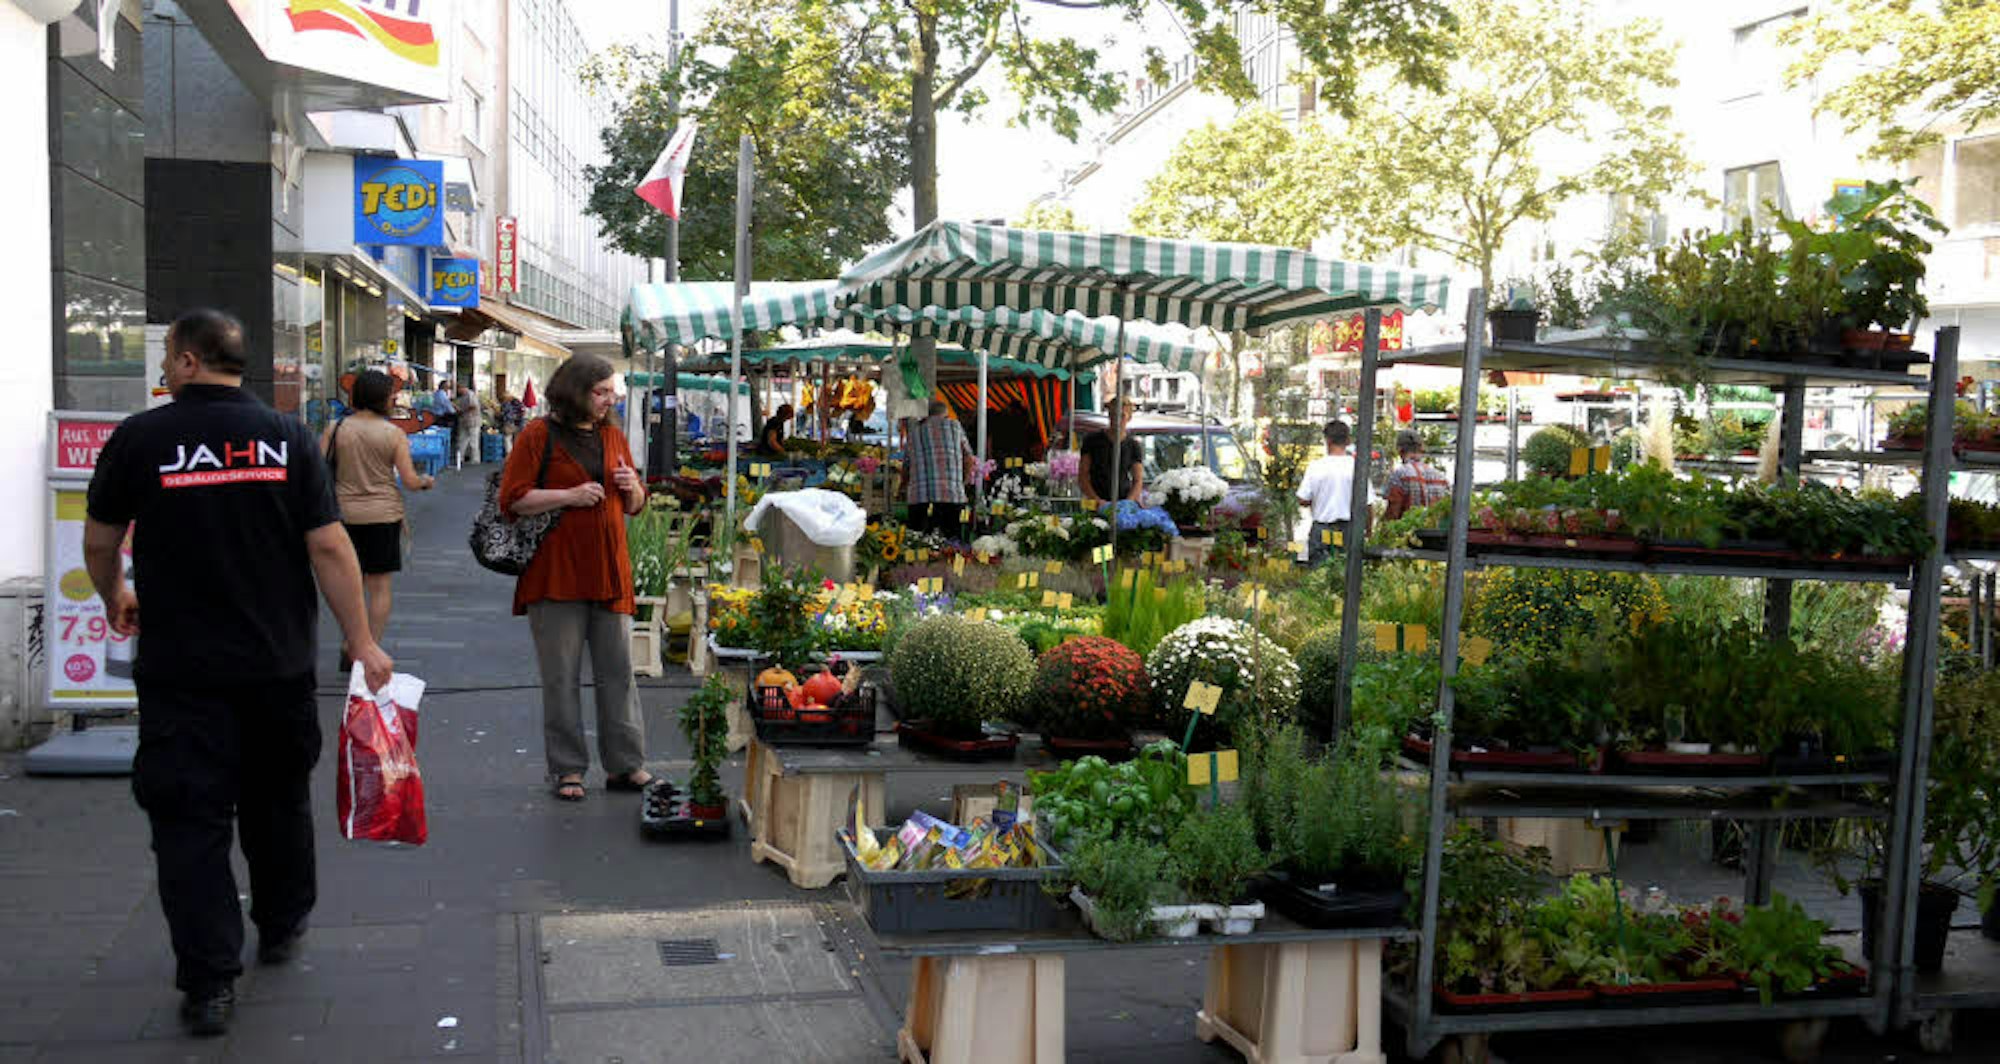 Wohl noch länger werden die Marktstände samstags an der Kalker Hauptstraße aufgebaut.